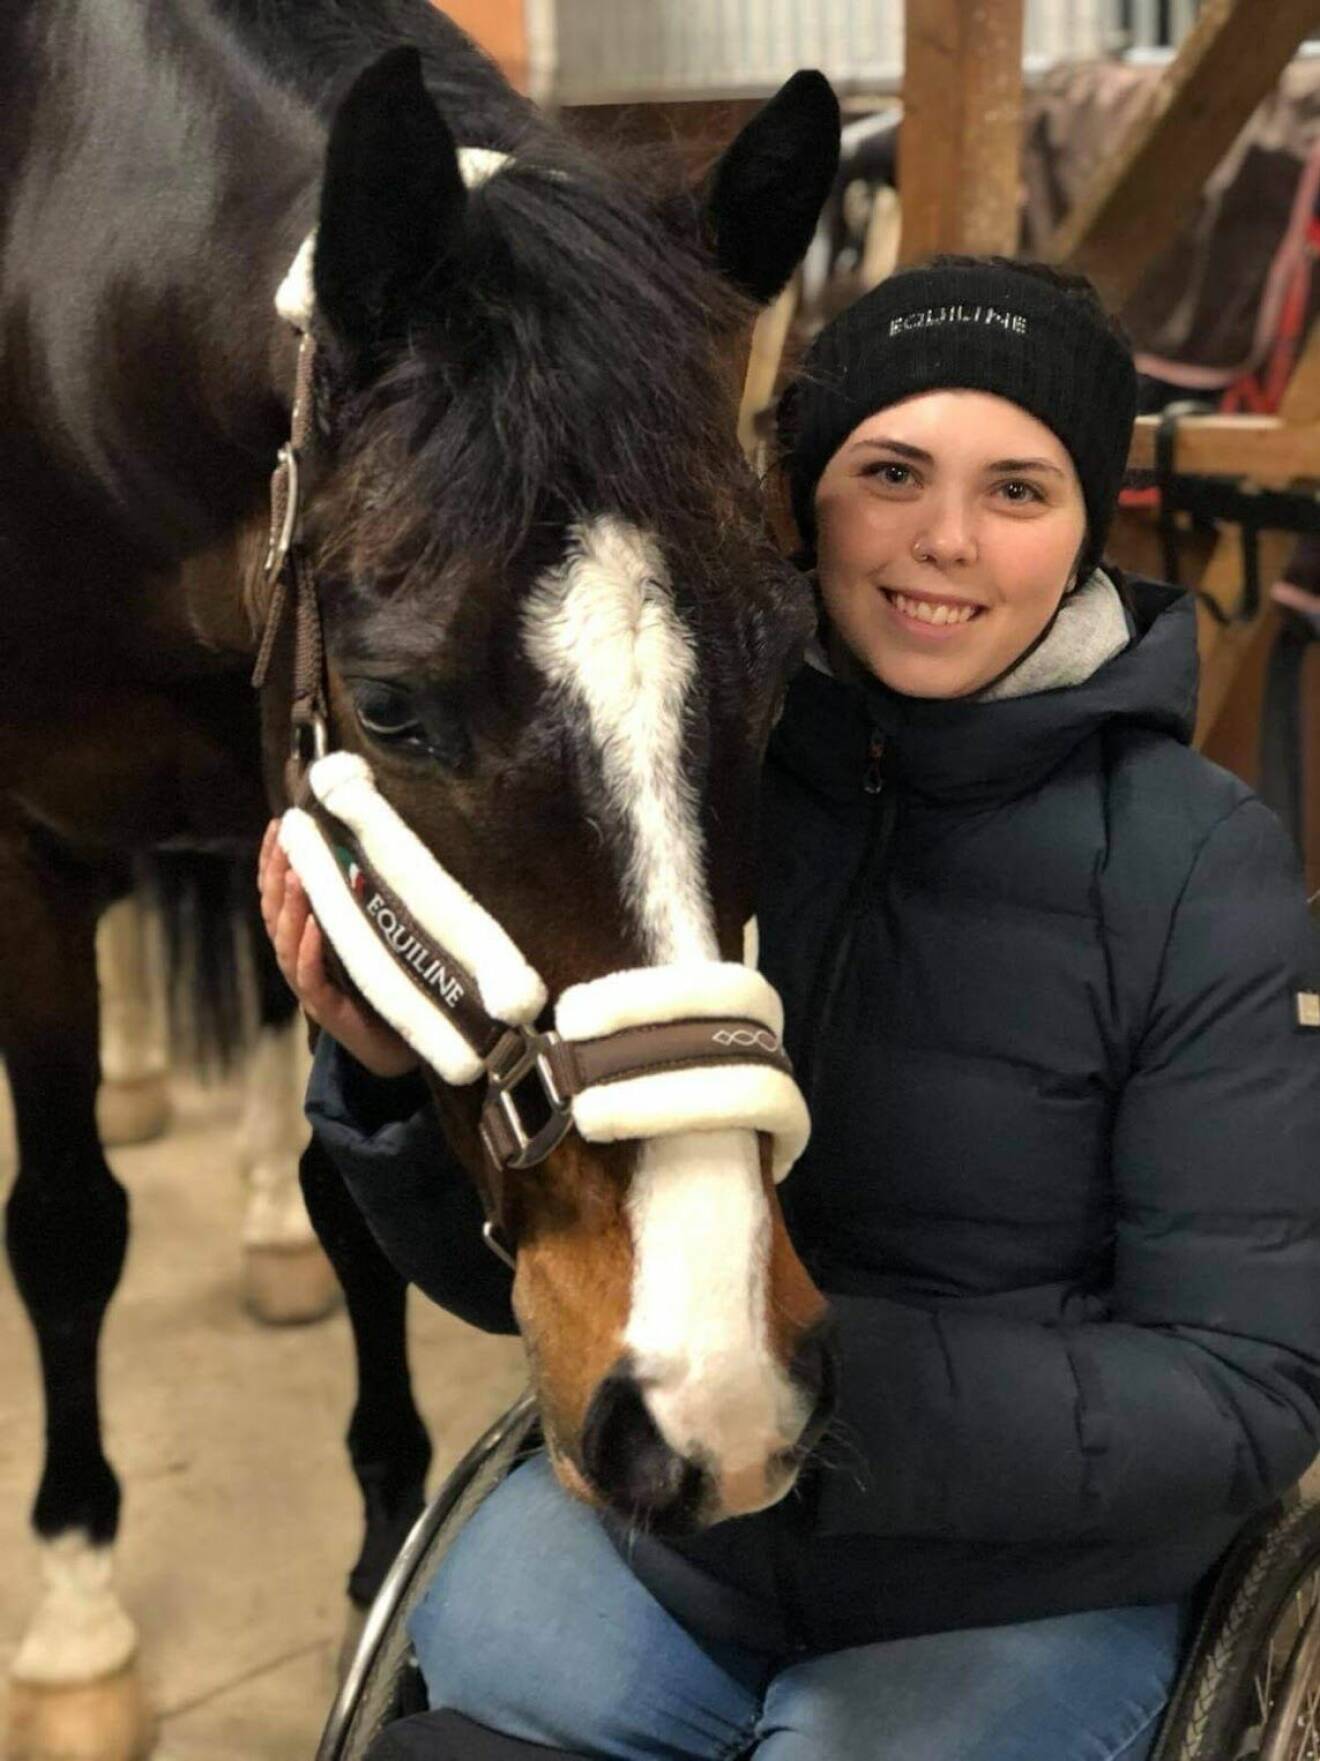 Felicia i stallet med hästen